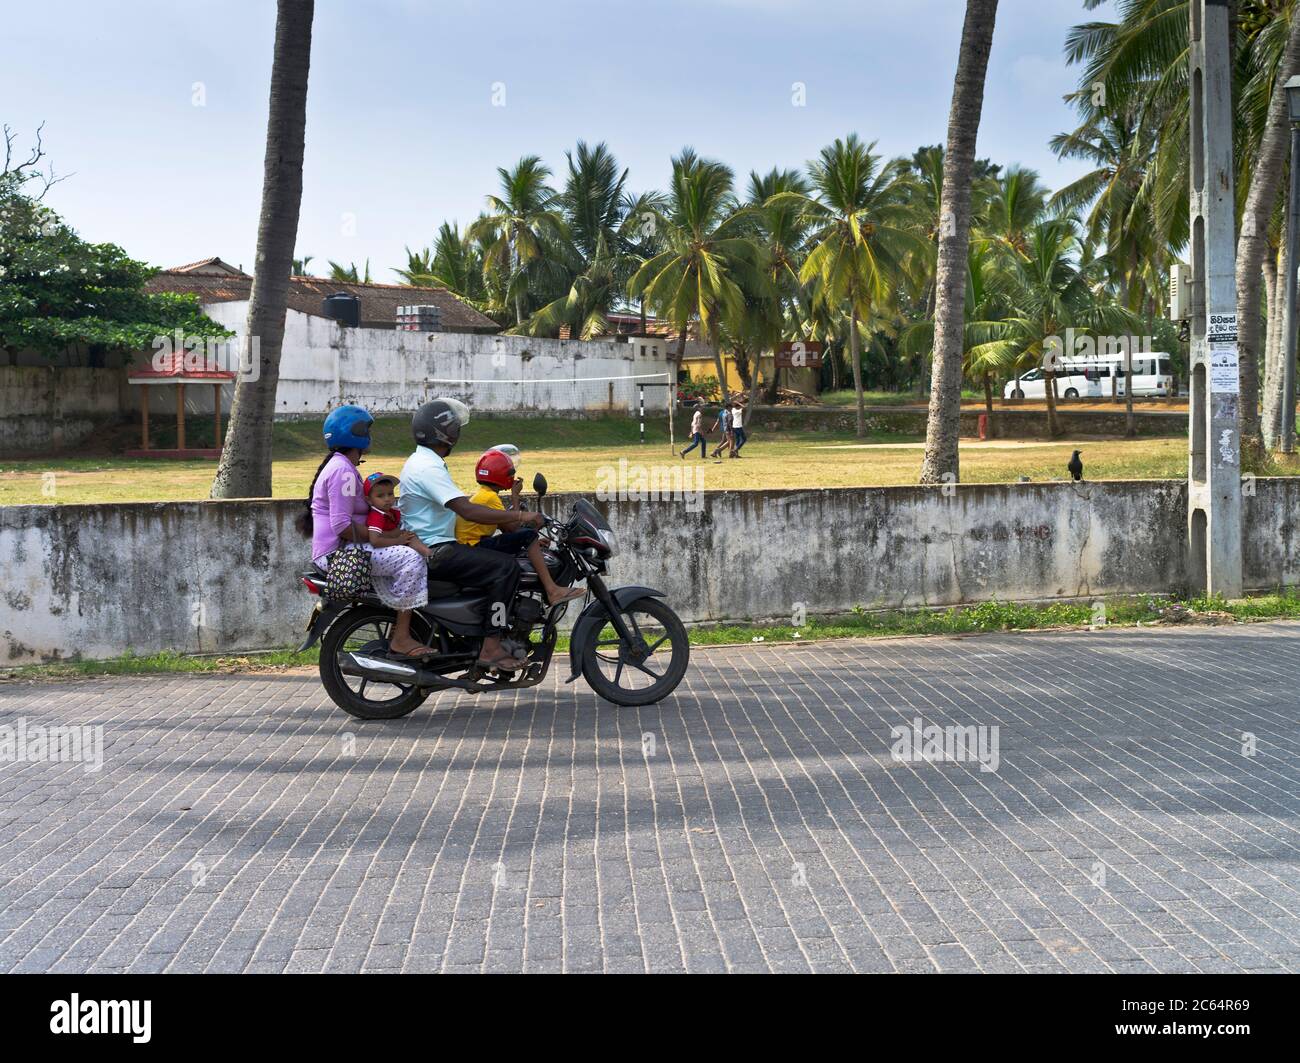 dh famille sur moto GALLE FORT SRI LANKA Riding route casque rider Sri lankan personnes motos asiatiques Banque D'Images